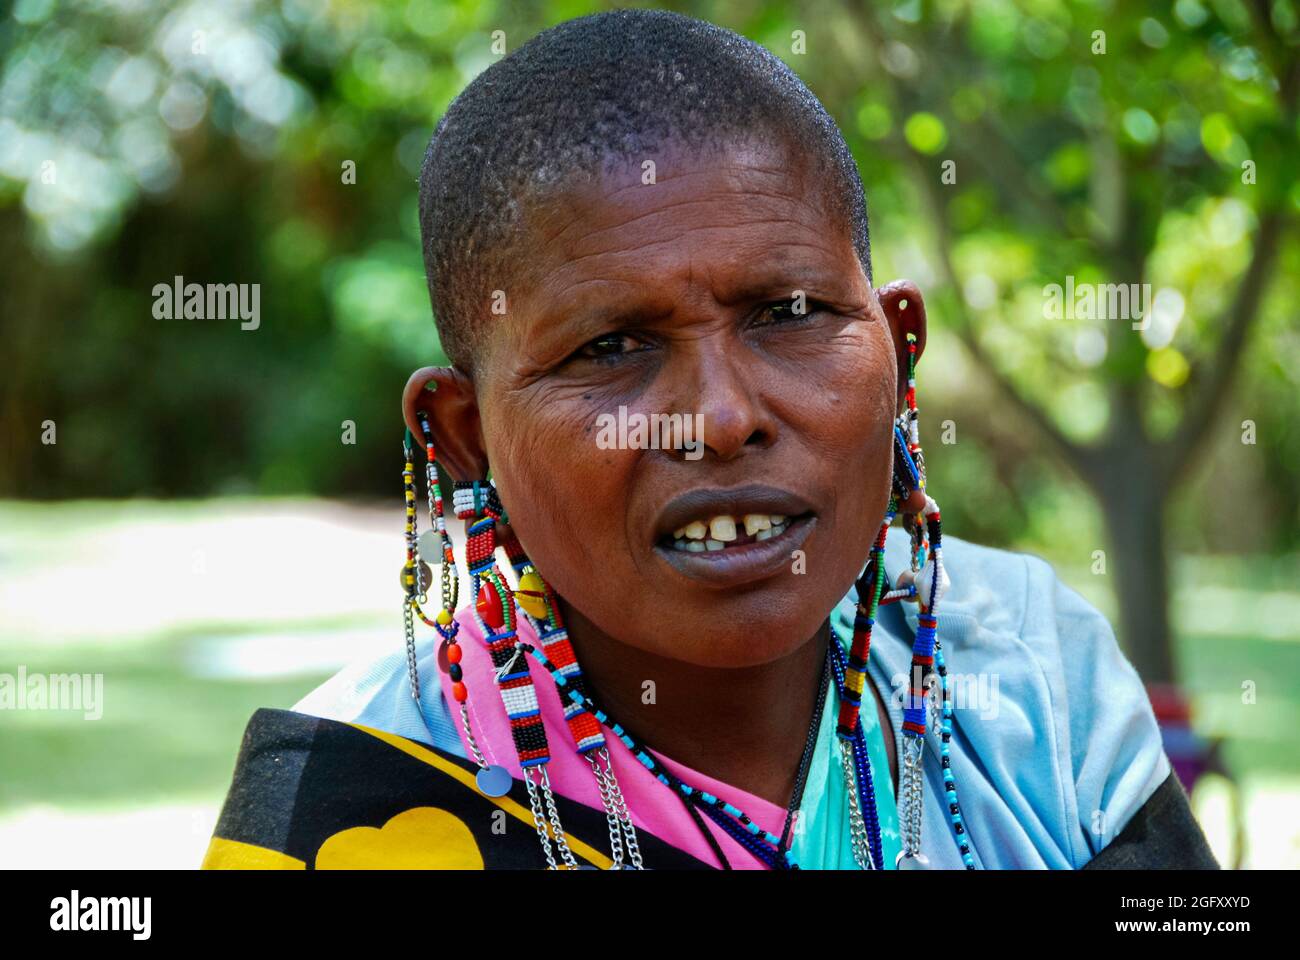 Retrato de una mujer de la tribu Masai en Kenia. Foto de stock